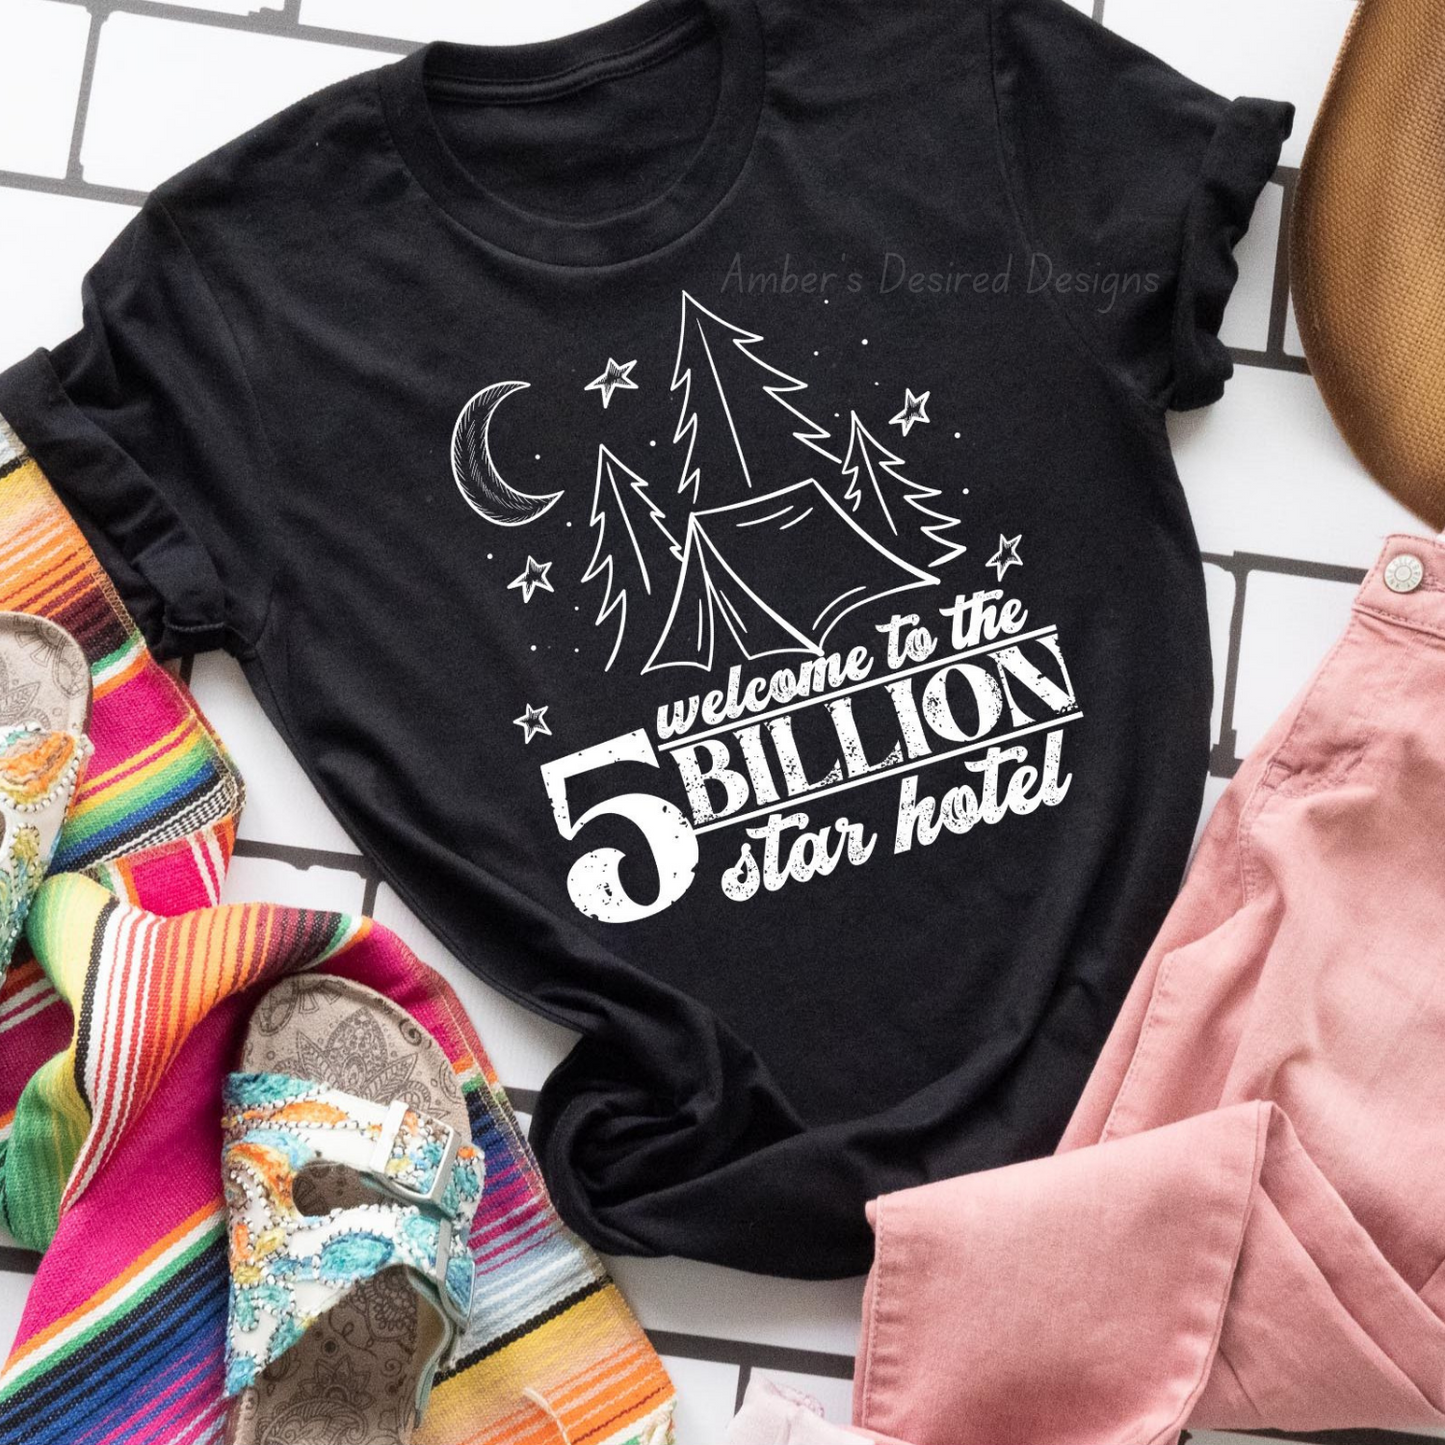 5 Billion Star Hotel - short sleeve T